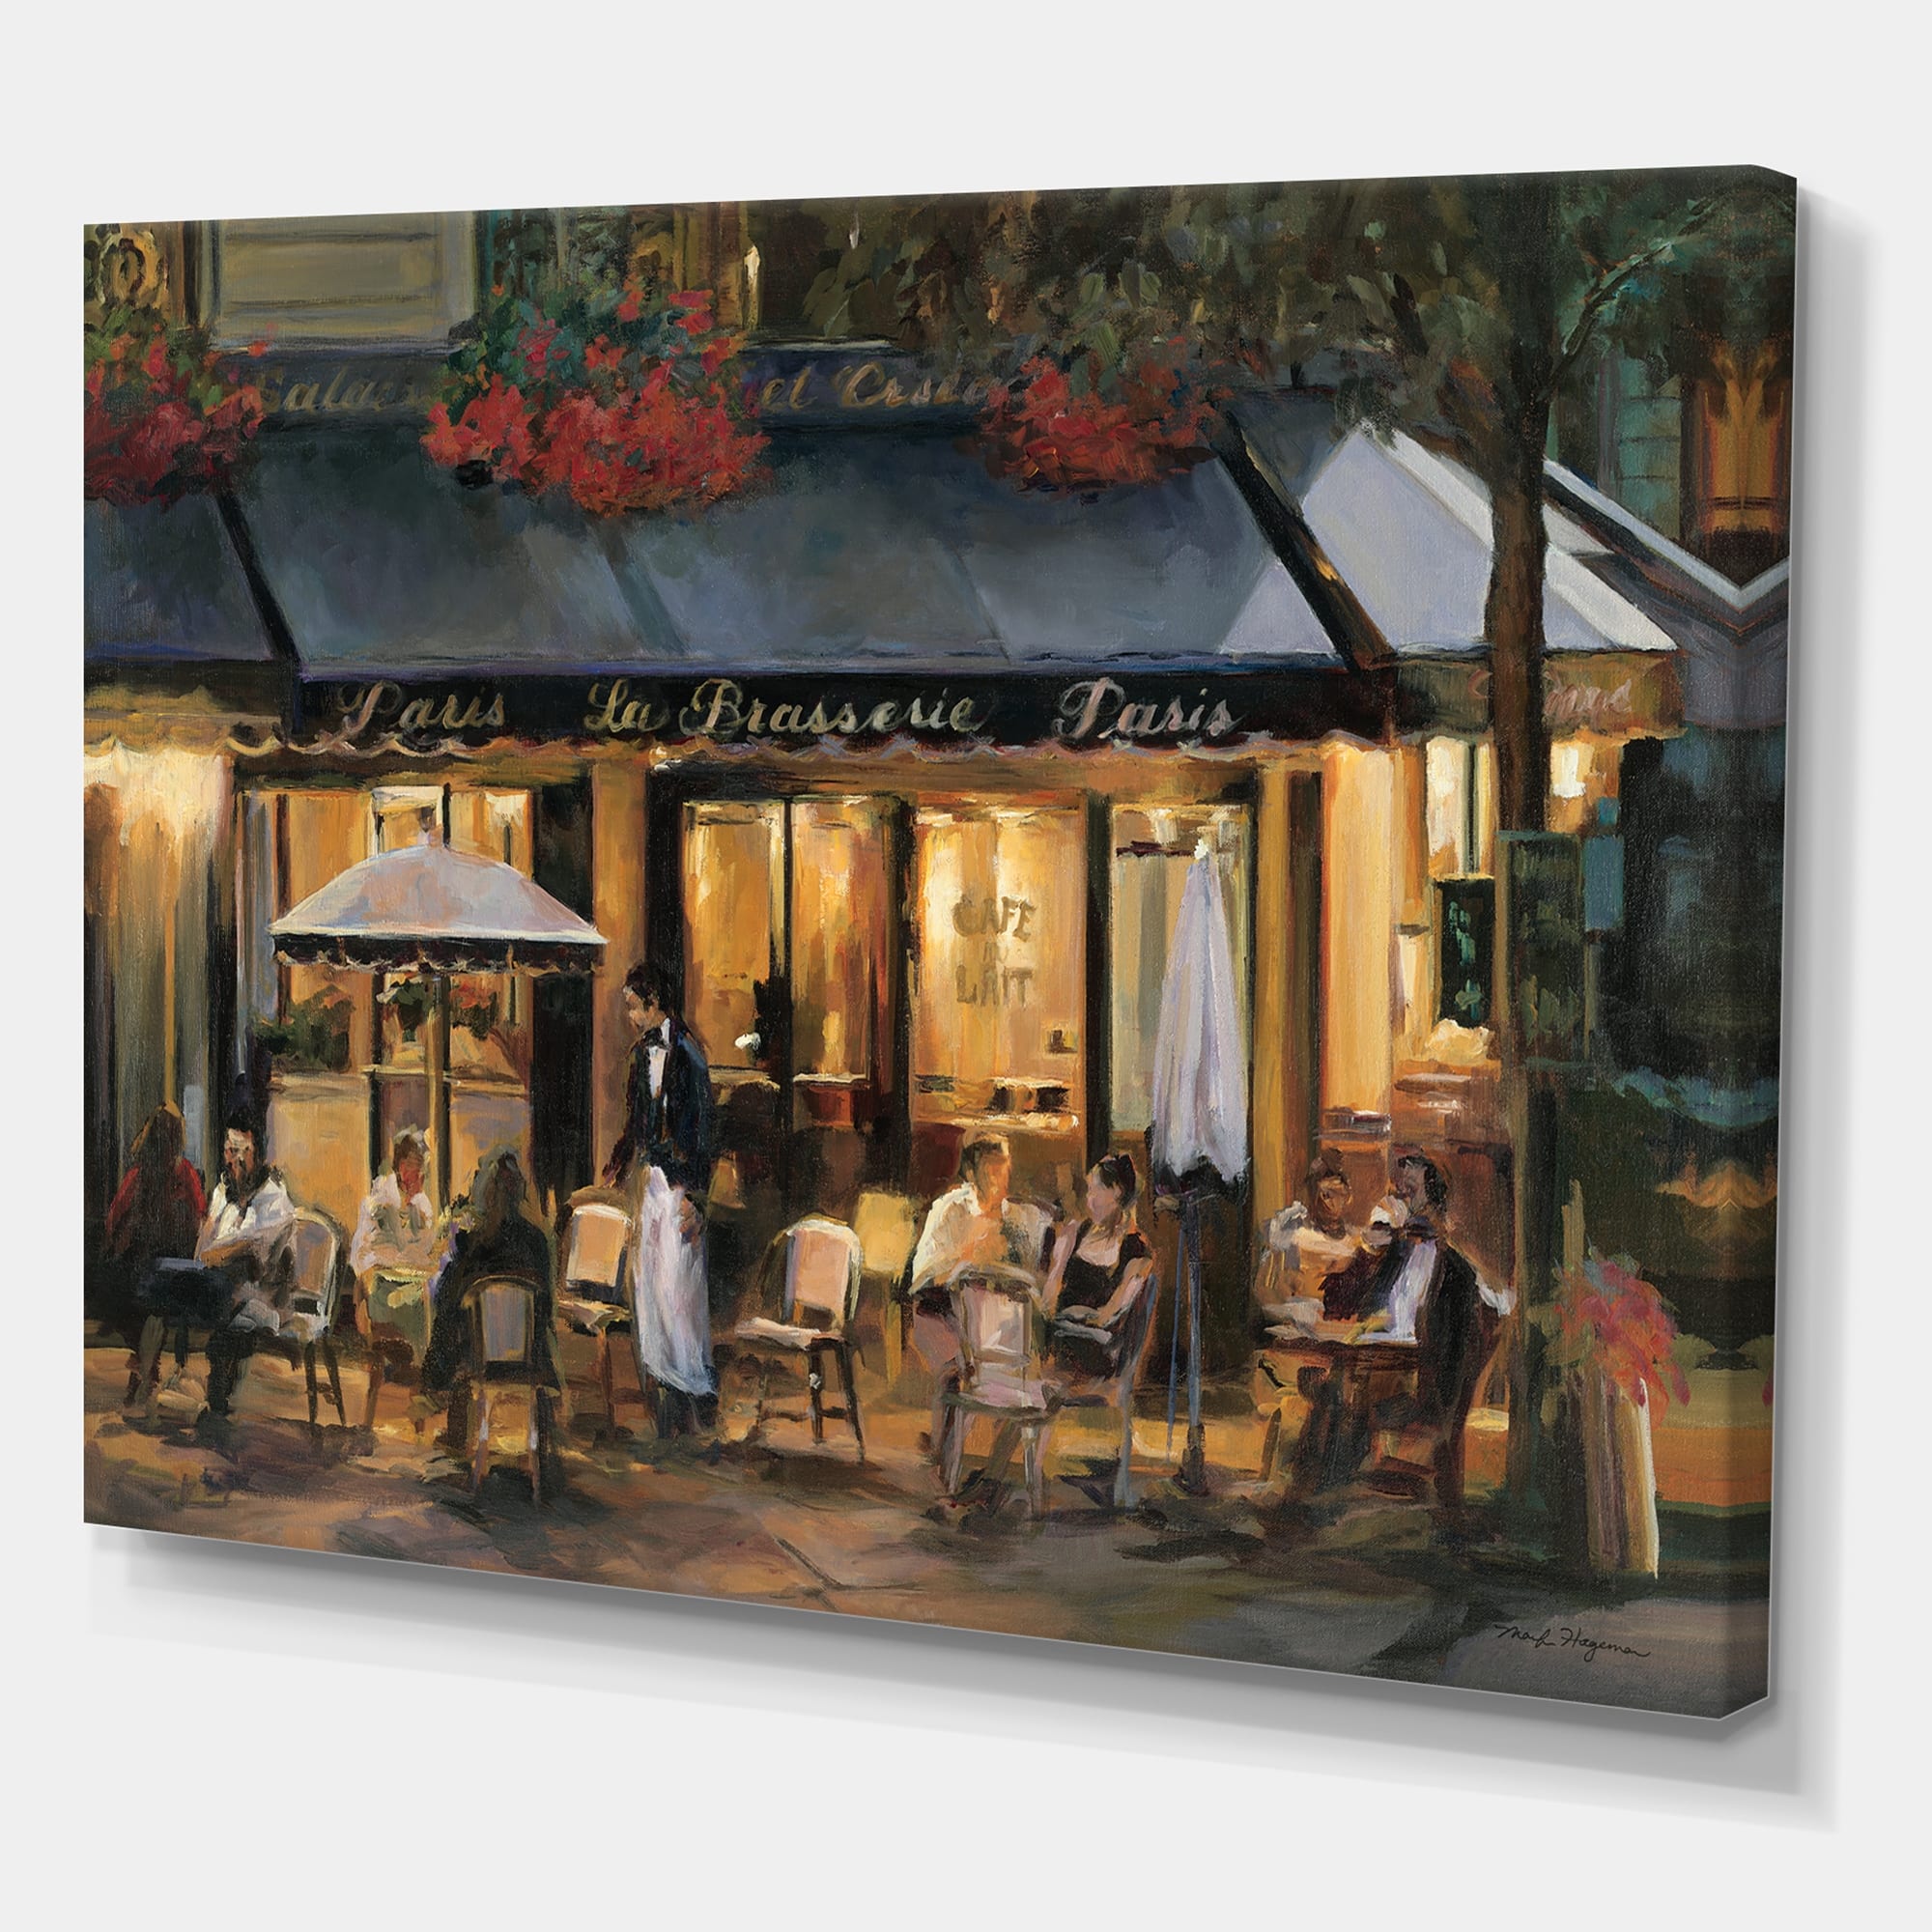 Porch & Den La Brasserie of Champs-elysees Paris